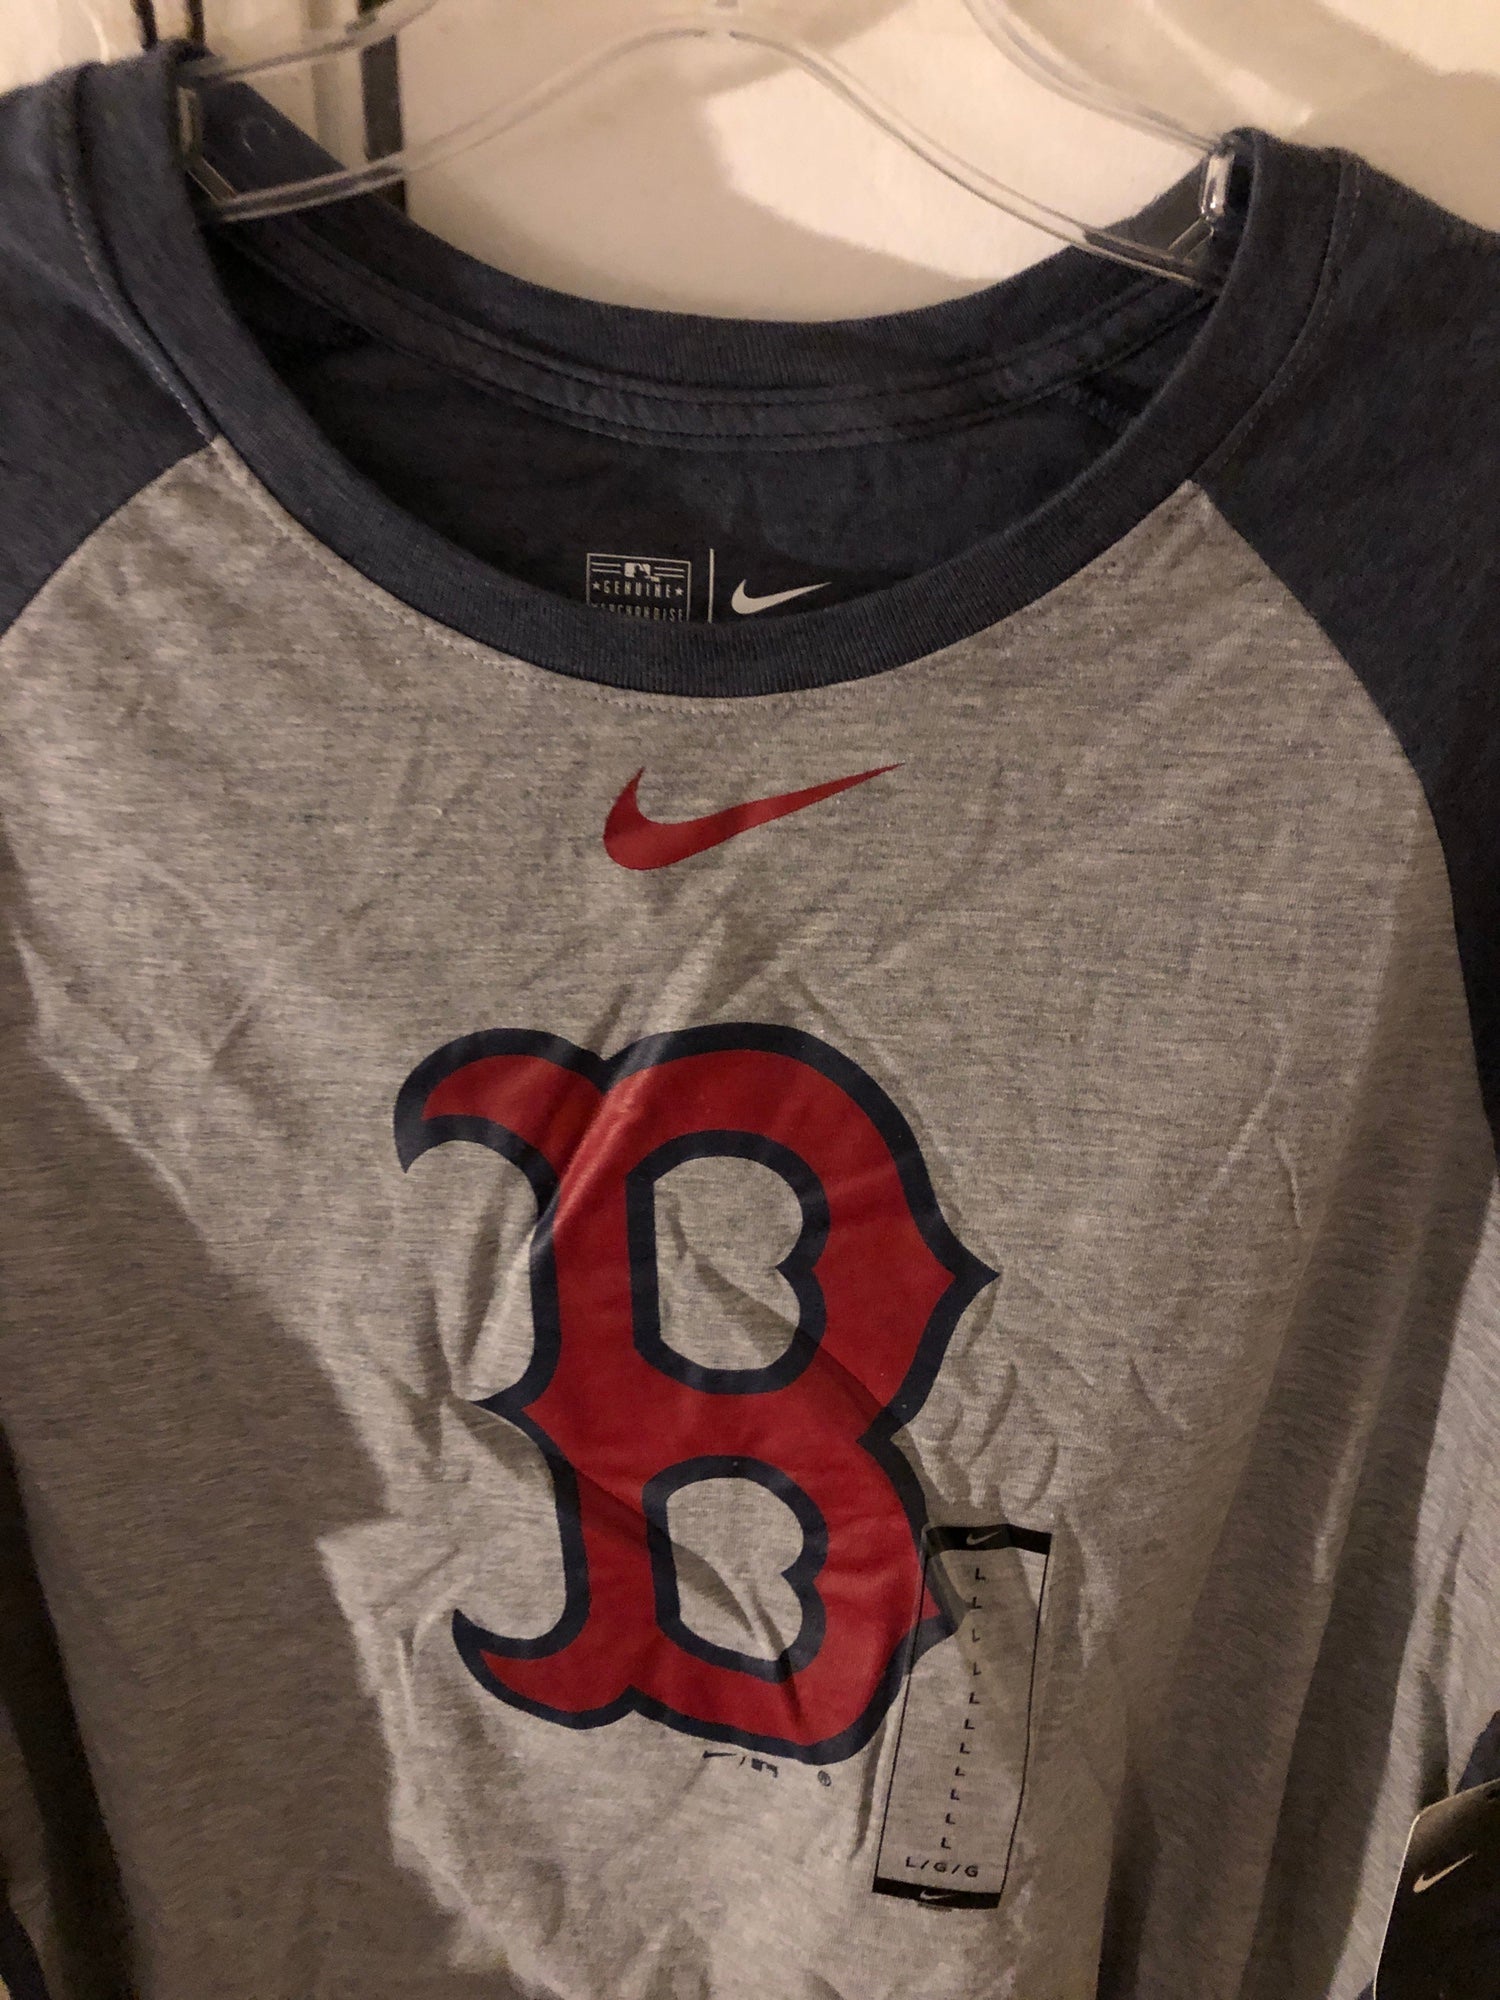 Nike Boston Red Sox Baseball T-Shirt Mens XL 3/4 sleeve cotton blend shirt  MLB